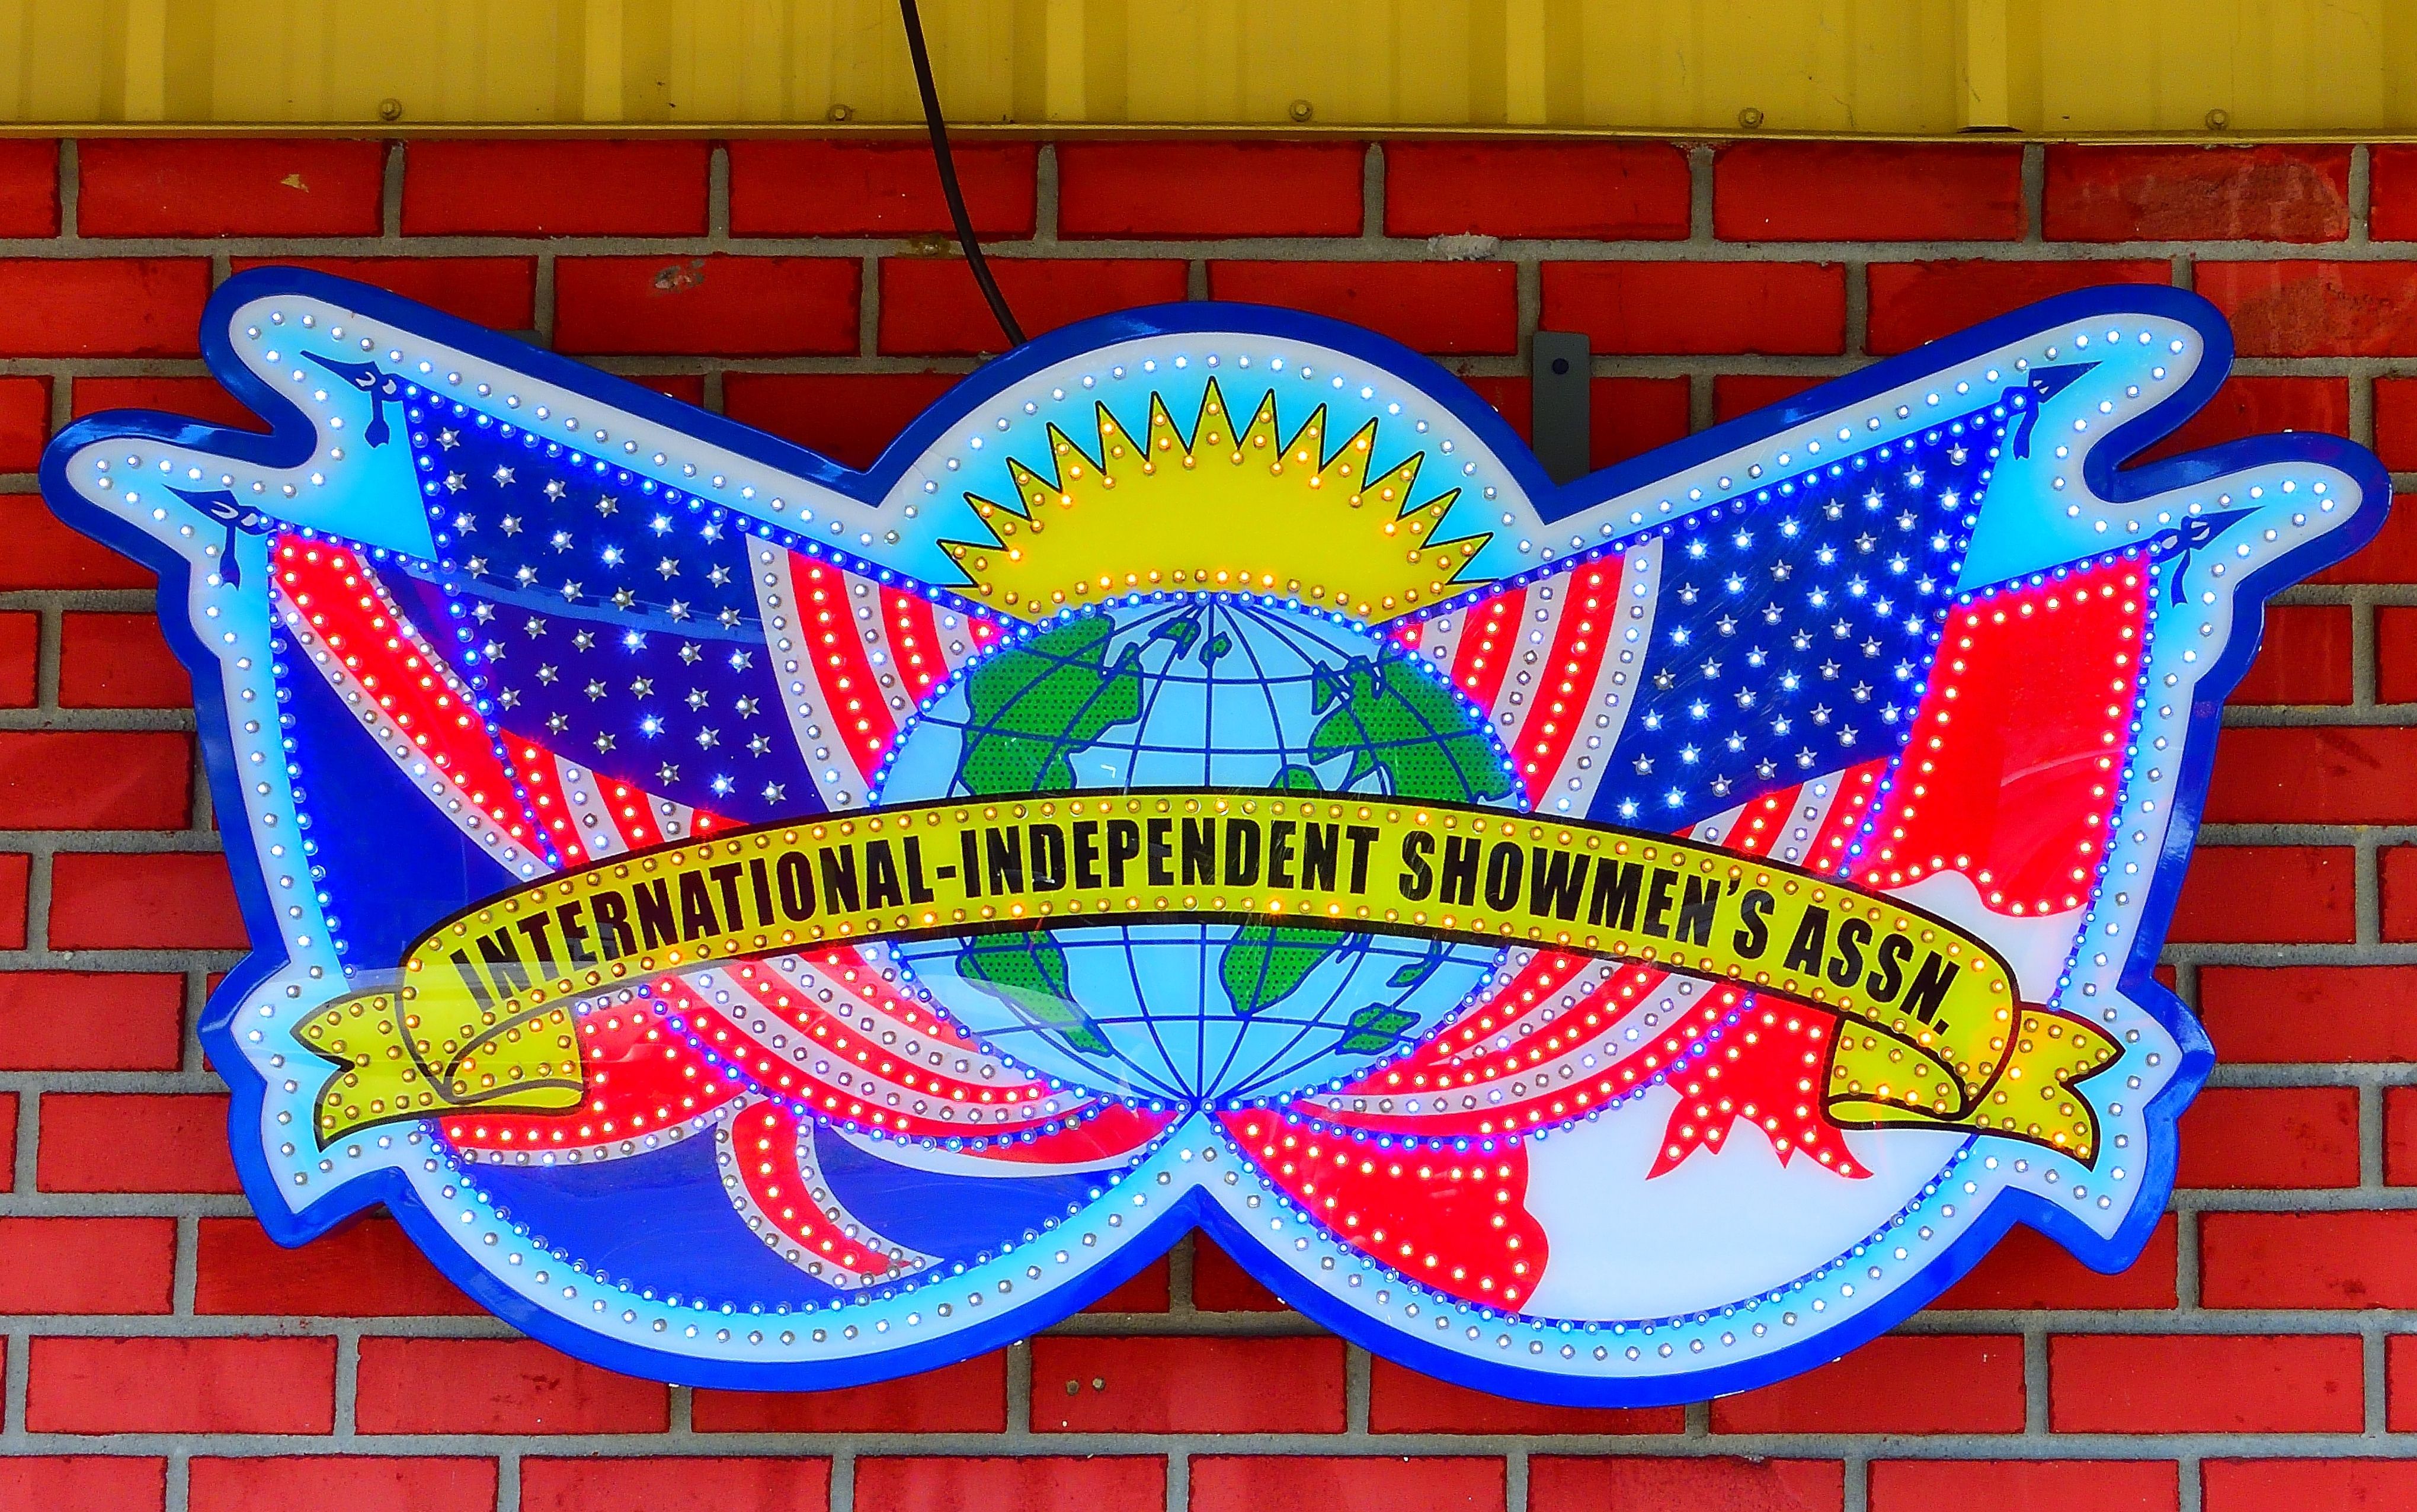 The International Independent Showmen's Association